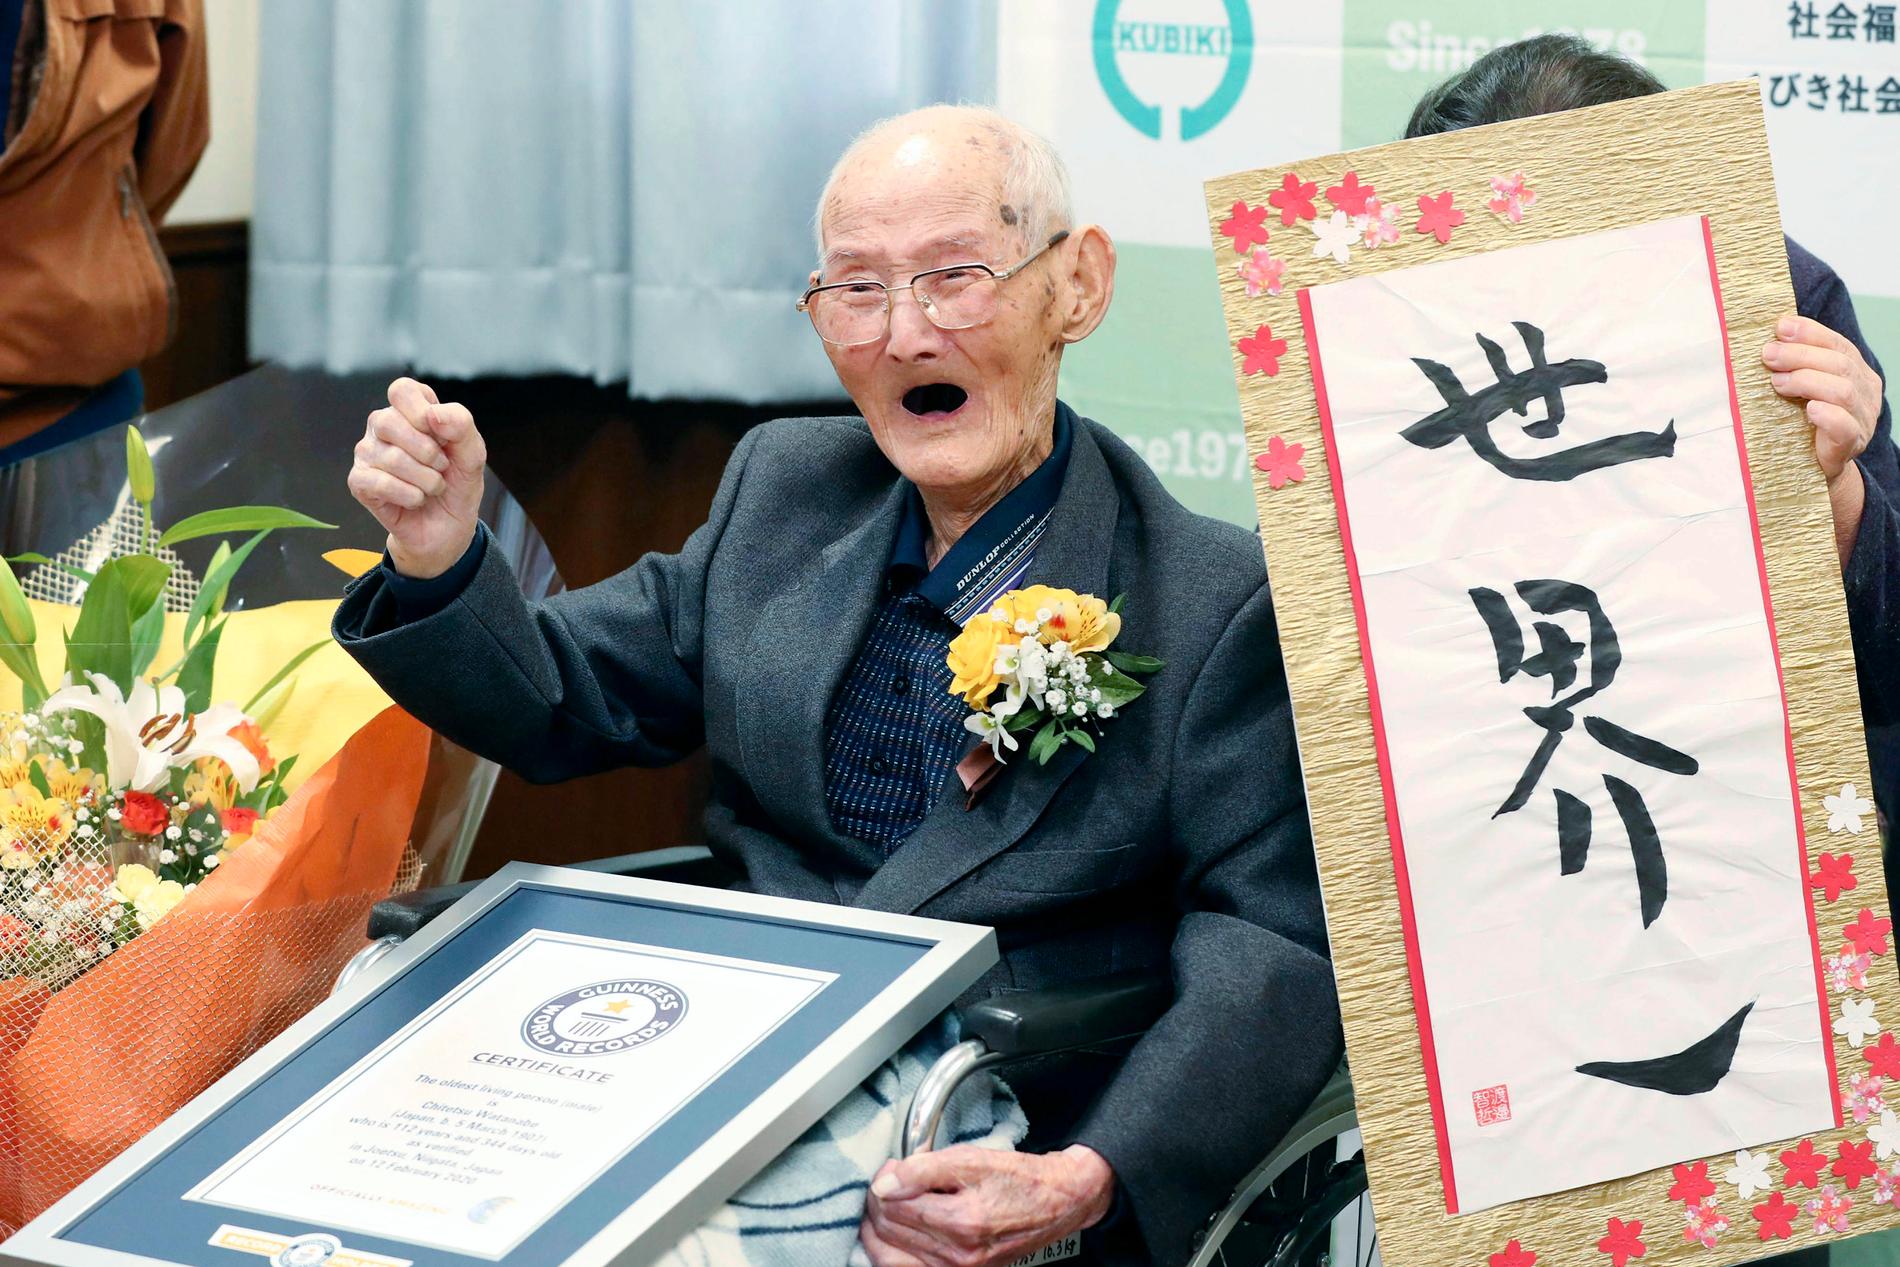 Chitetsu Watanabe höjde näven i en segergest när han utsågs till världens äldste man den 12 februari.